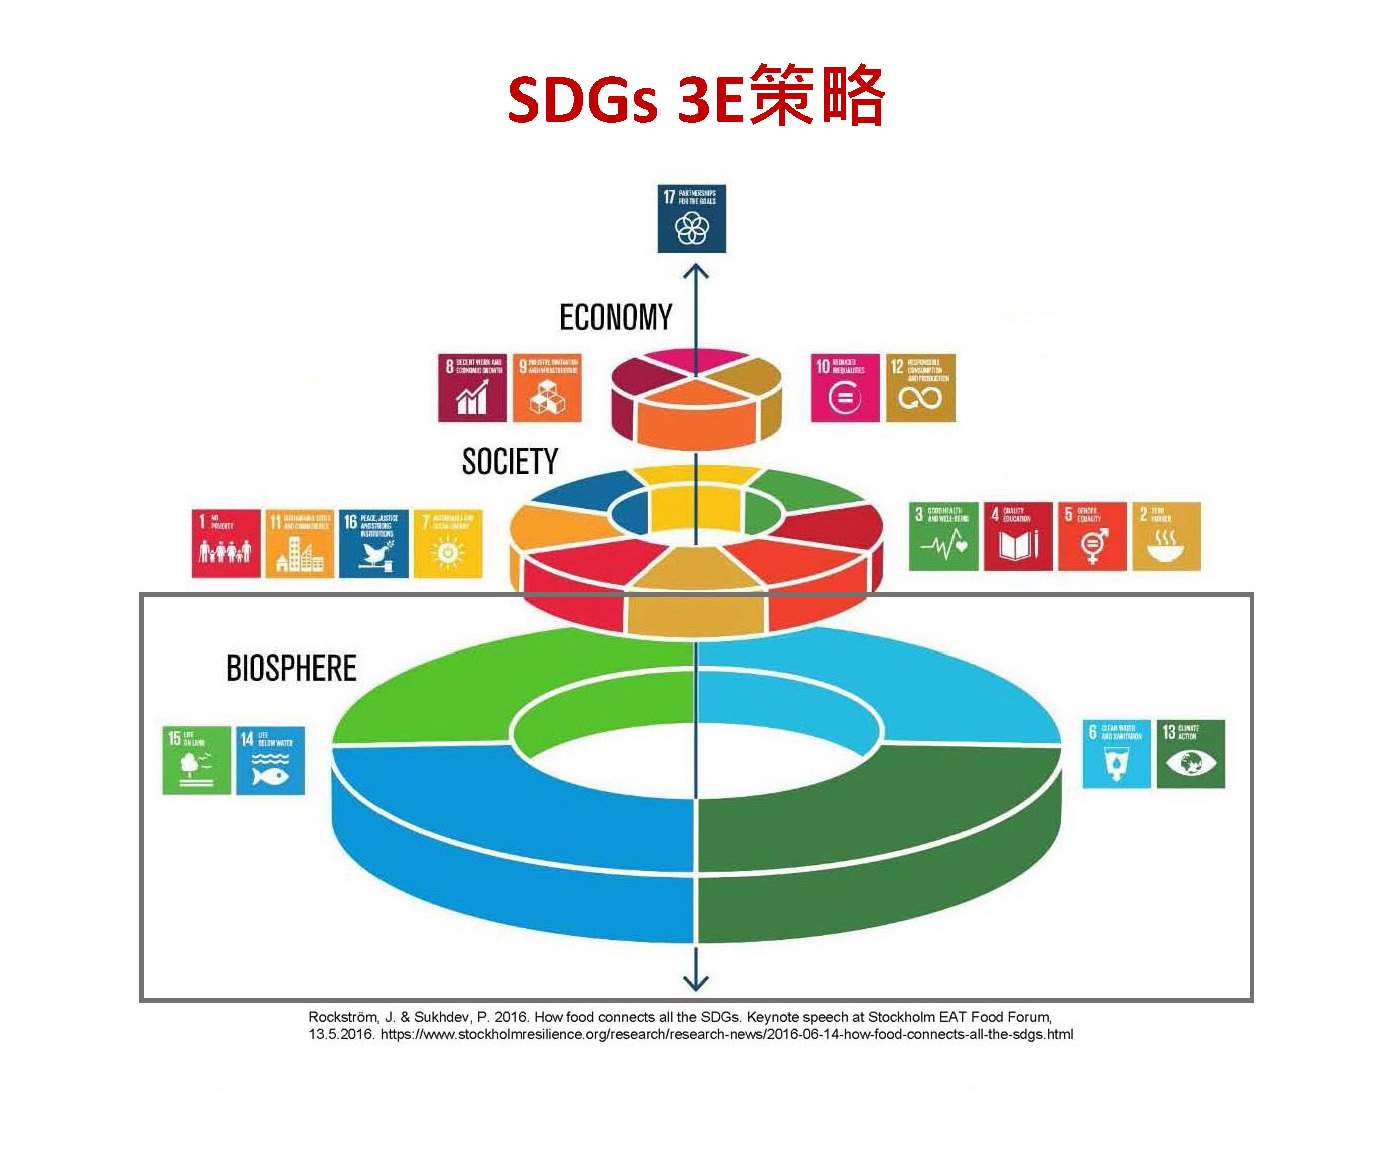 SDGs 3E策略